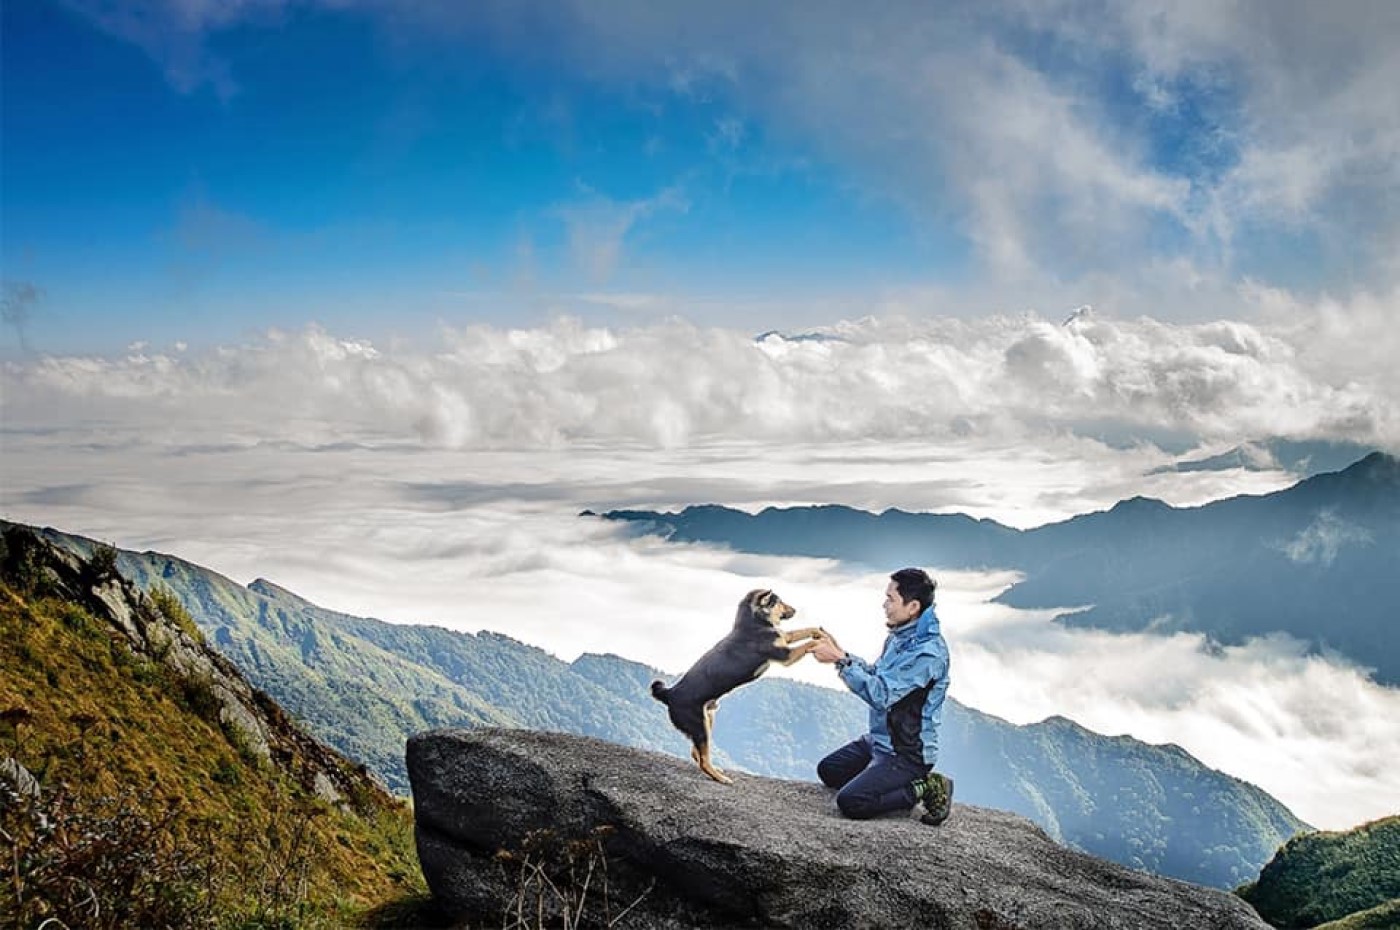 Chia sẻ bí kíp chinh phục đỉnh Lùng Cúng cho hội đam mê trekking